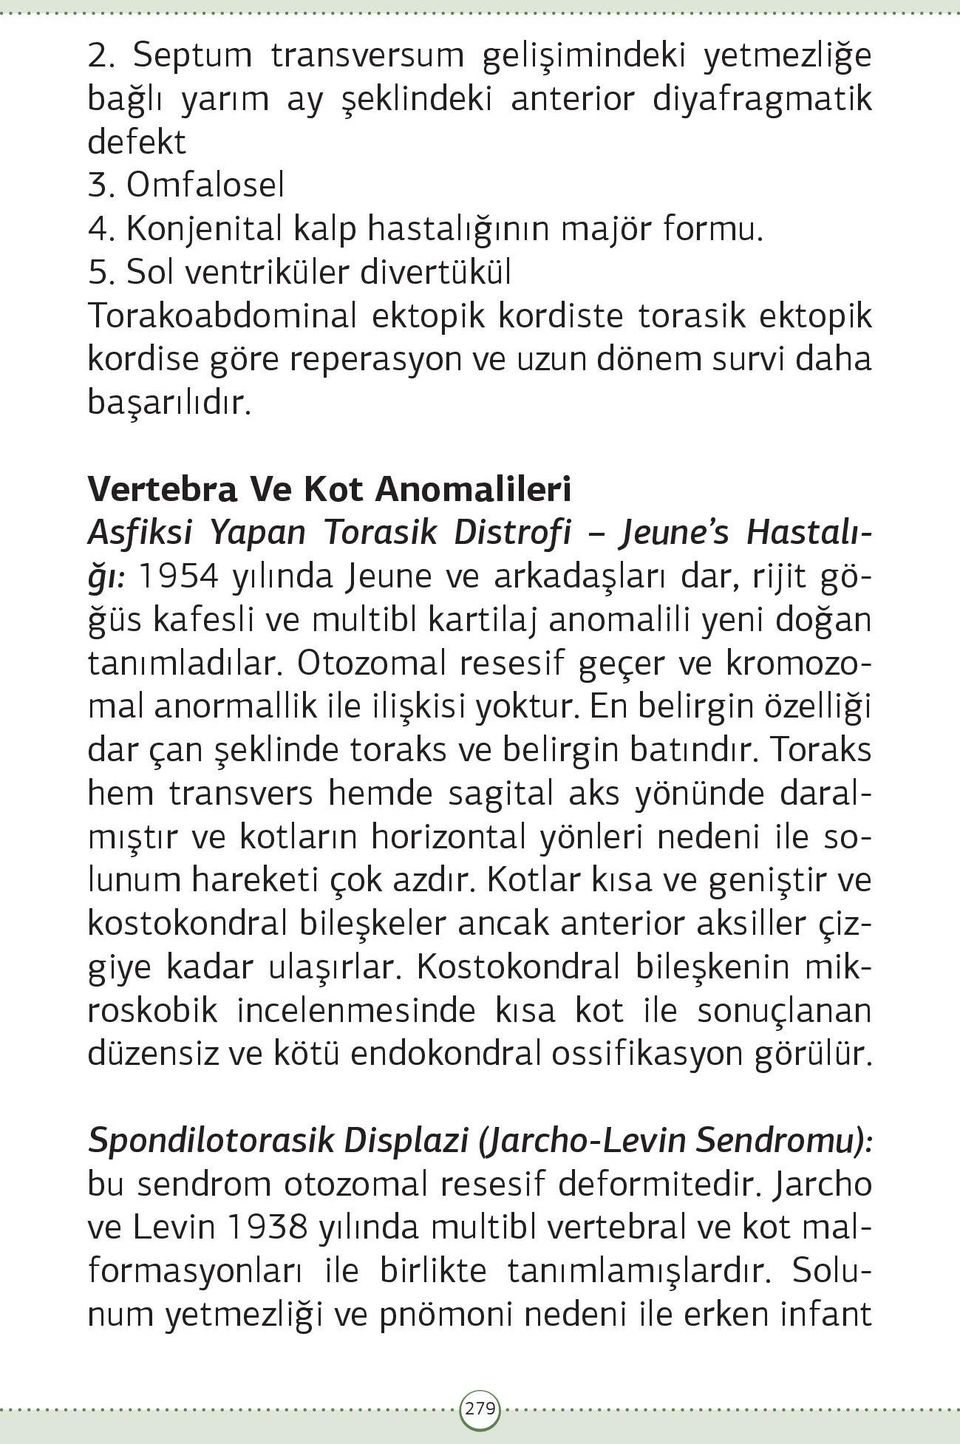 Vertebra Ve Kot Anomalileri Asfiksi Yapan Torasik Distrofi Jeune s Hastalığı: 1954 yılında Jeune ve arkadaşları dar, rijit göğüs kafesli ve multibl kartilaj anomalili yeni doğan tanımladılar.